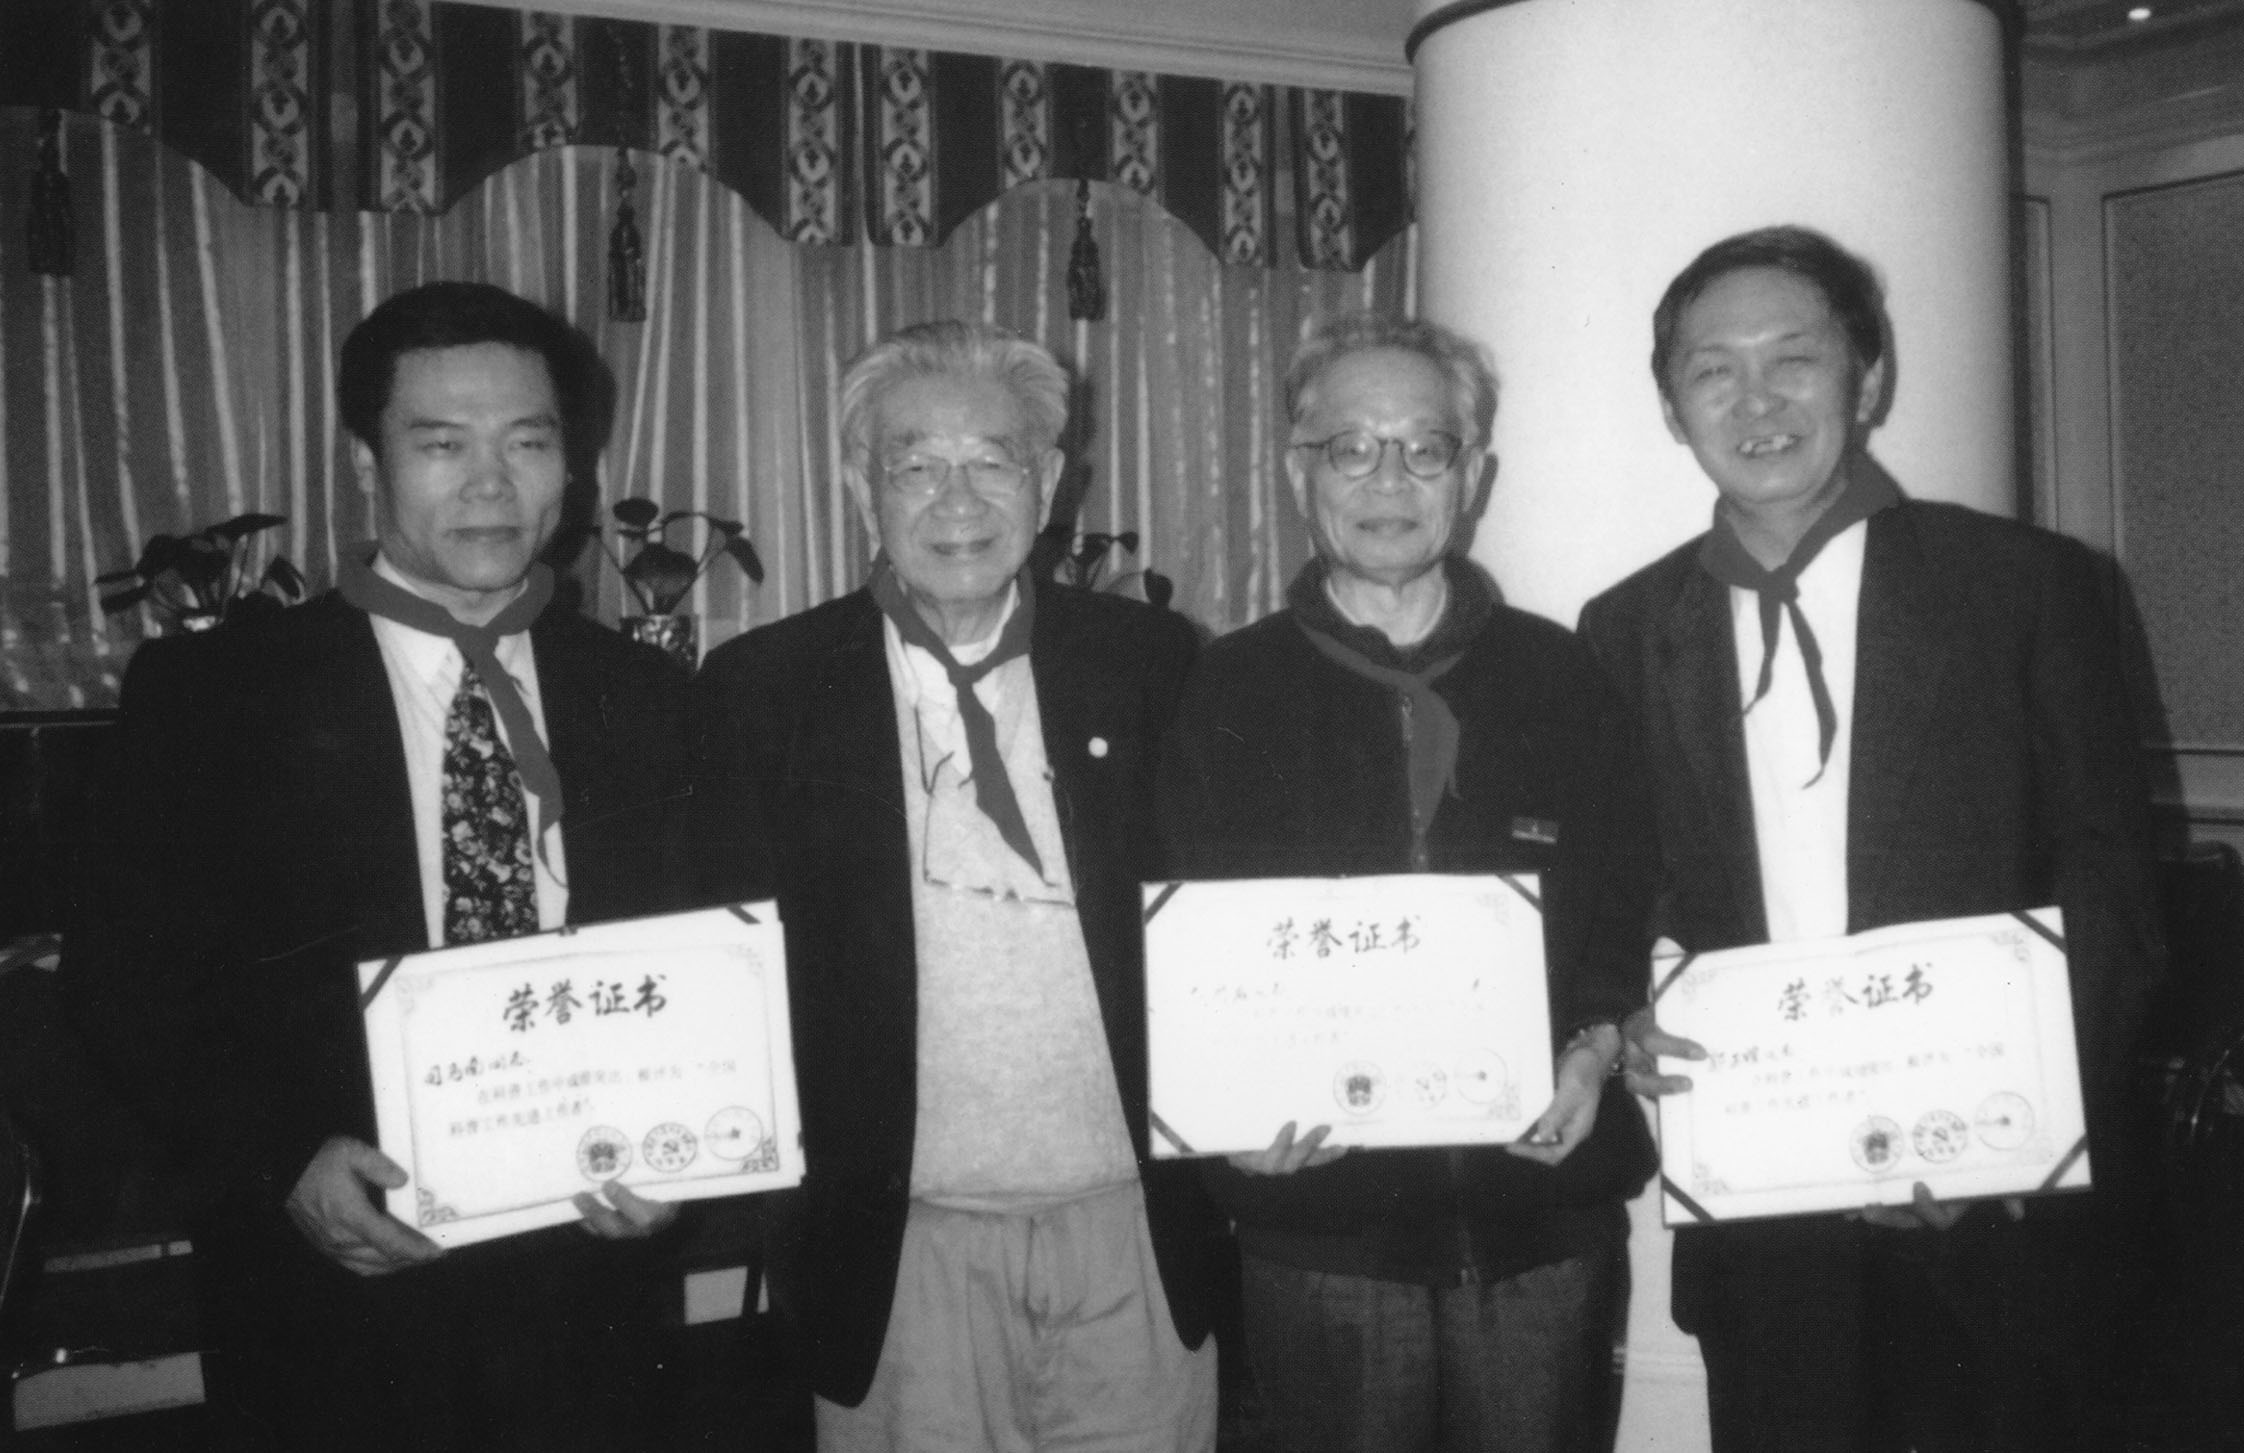 于光远、何祚庥、郭正谊、司马南等反伪科学斗士在获得首届反伪科学突出贡献奖后合影。